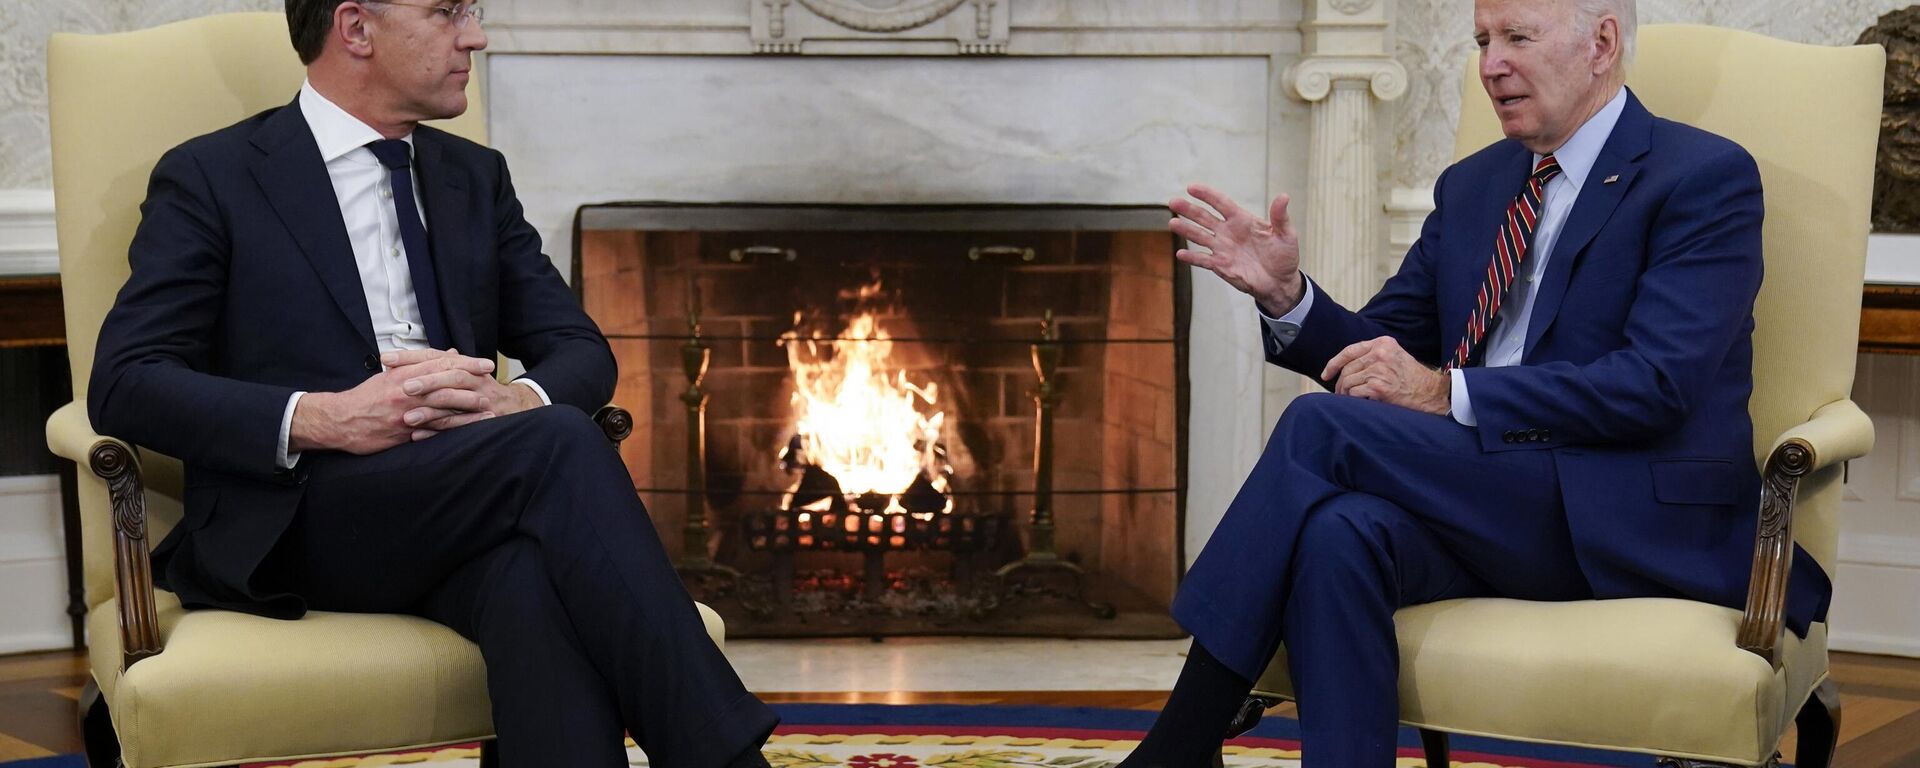 O presidente Joe Biden se encontra com o primeiro-ministro holandês Mark Rutte no Salão Oval da Casa Branca em Washington, 17 de janeiro de 2023 - Sputnik Brasil, 1920, 17.01.2023